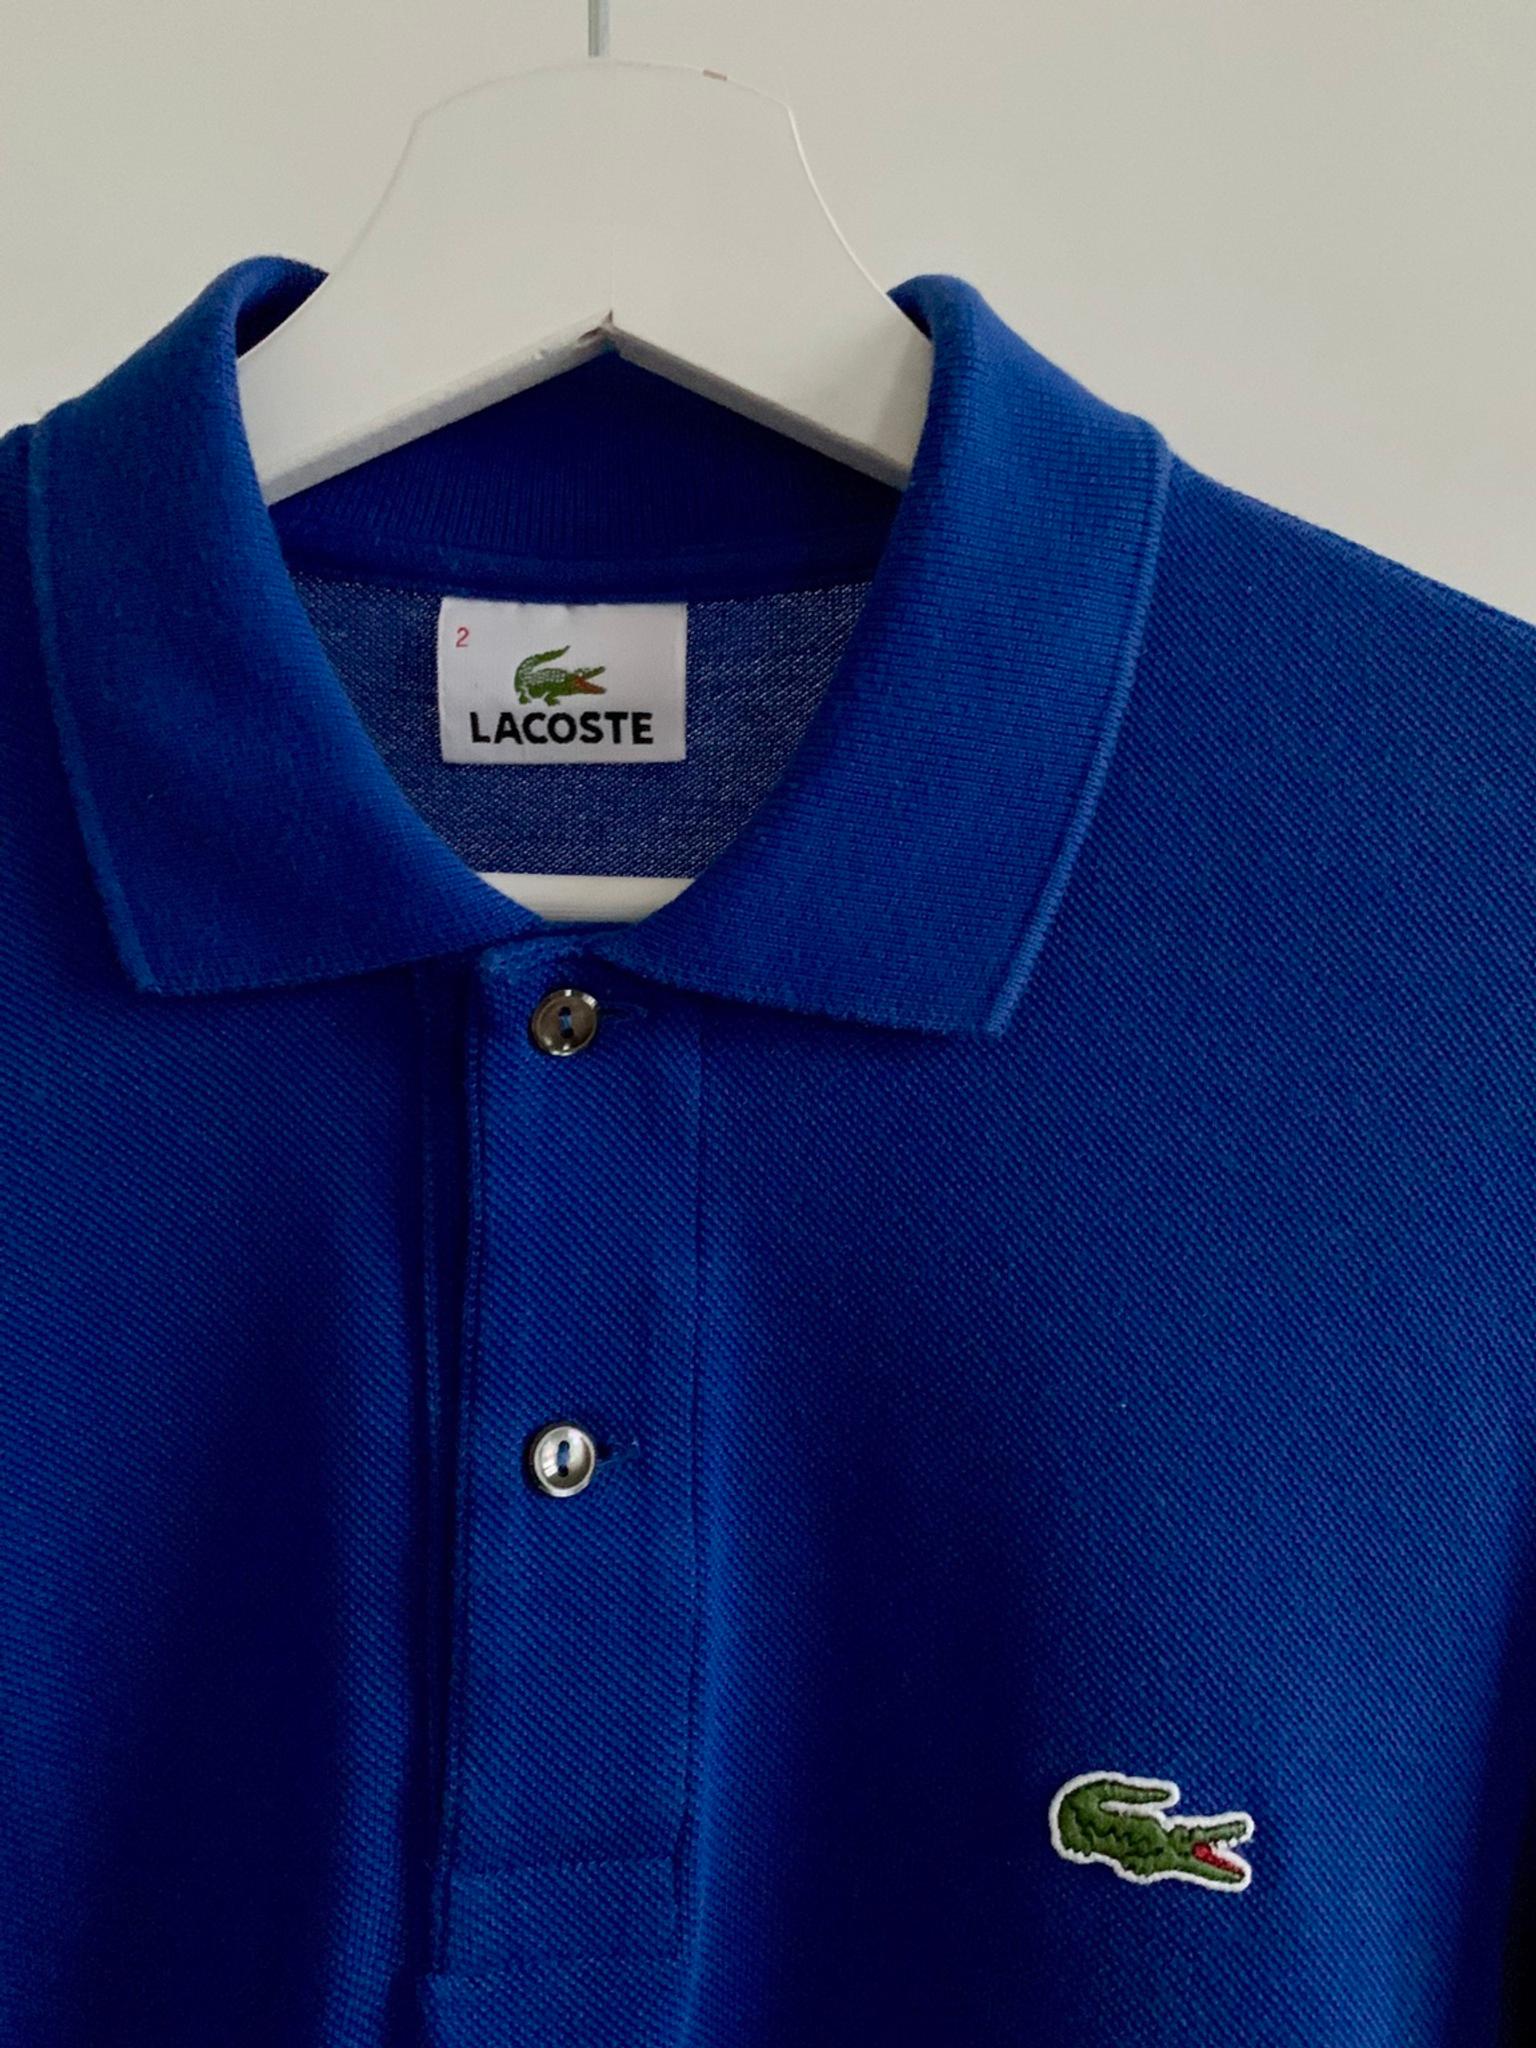 Lacoste Polo Shirts Blue Nils Stucki Kieferorthopade - how to make a shirt on roblox 2019 nils stucki kieferorthopäde